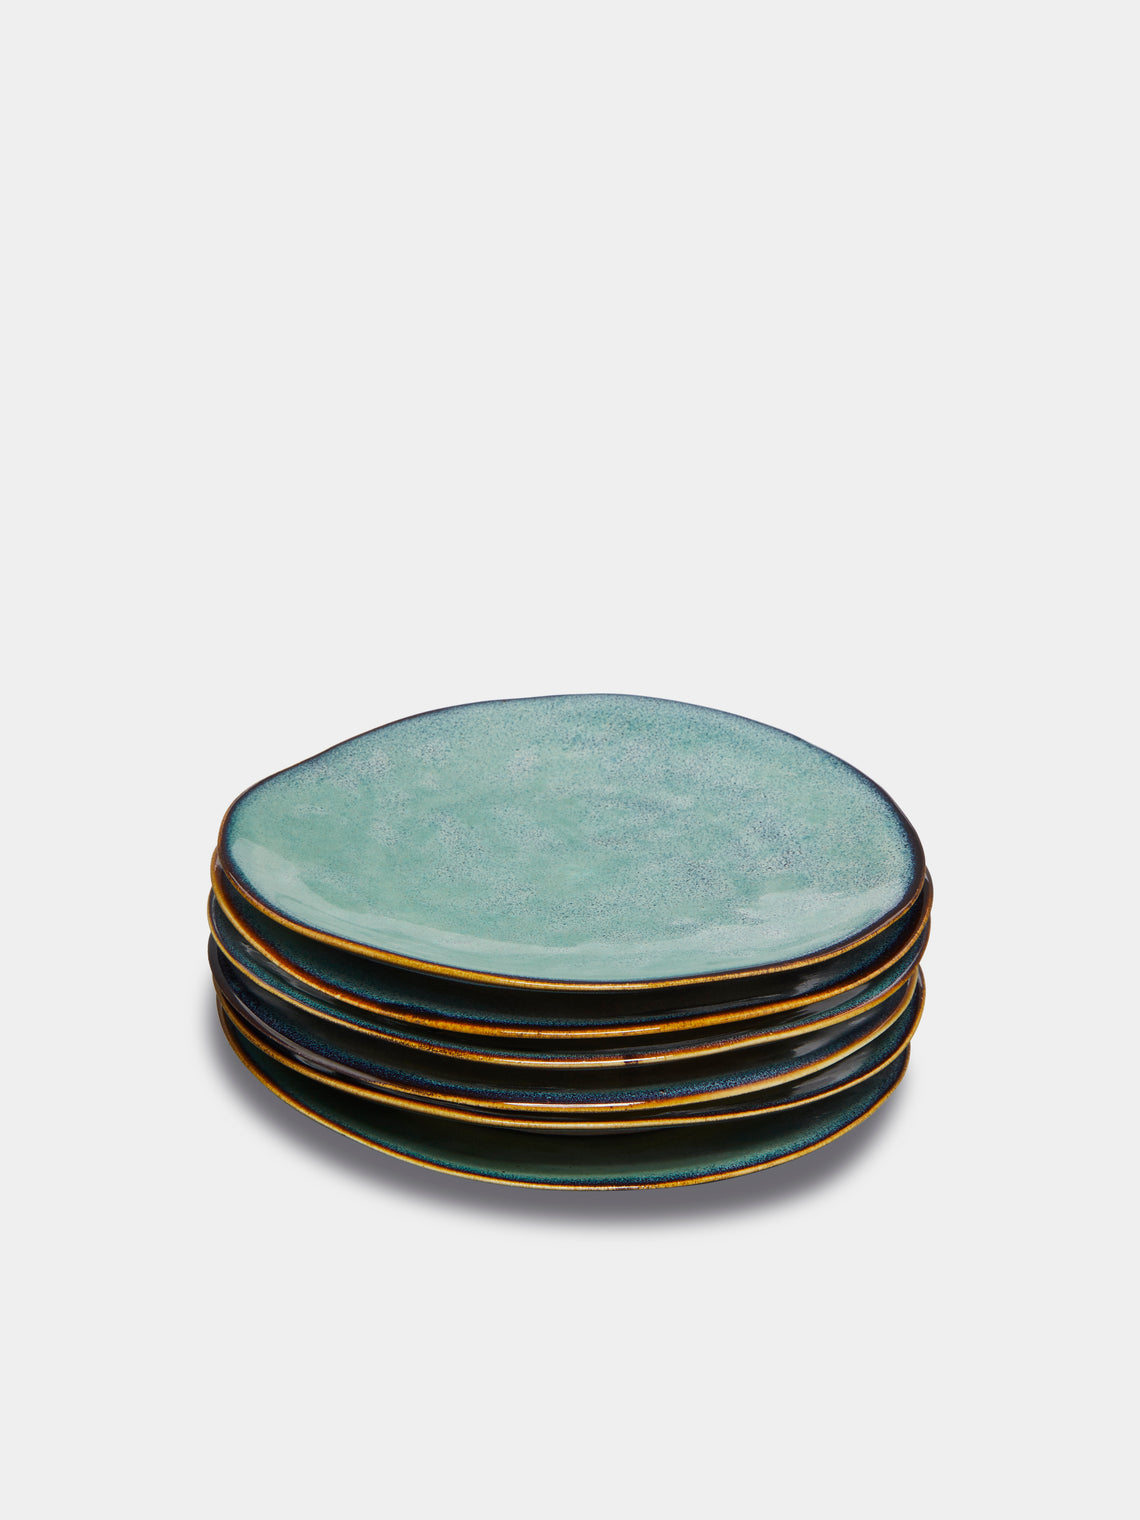 Mervyn Gers Ceramics - Hand-Glazed Ceramic Side Plates (Set of 6) - Blue - ABASK